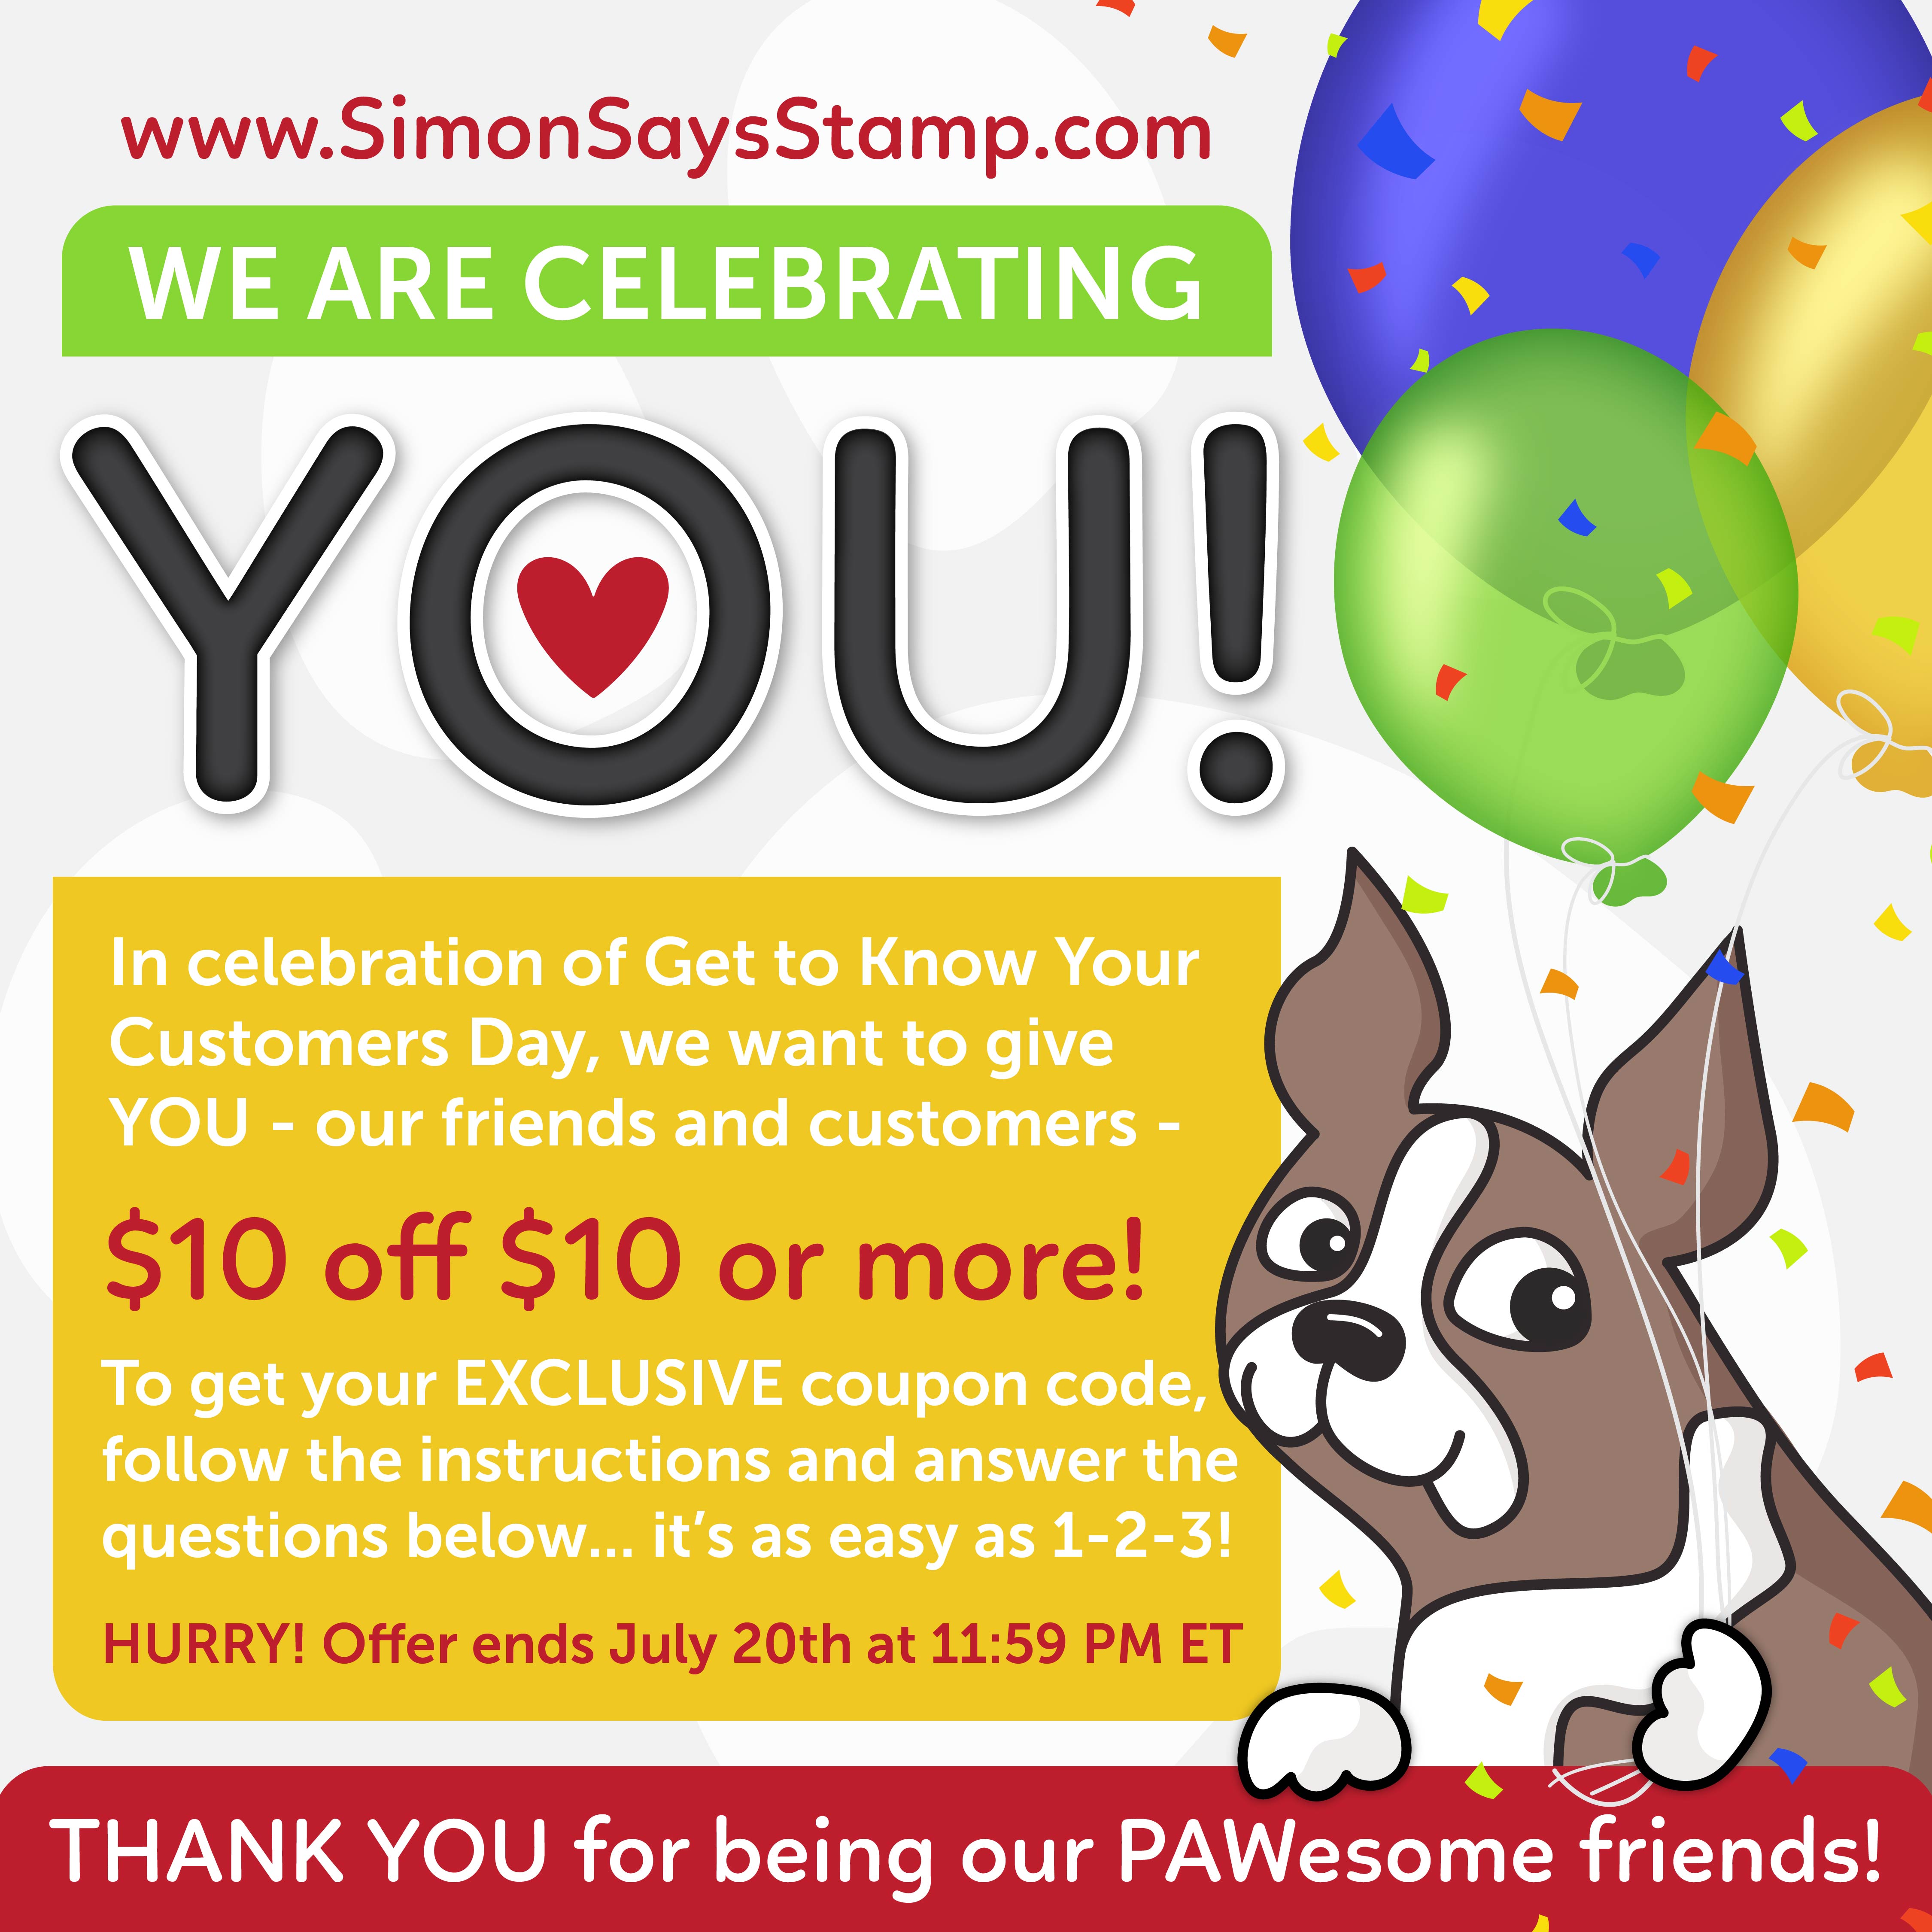 simon says stamp coupon